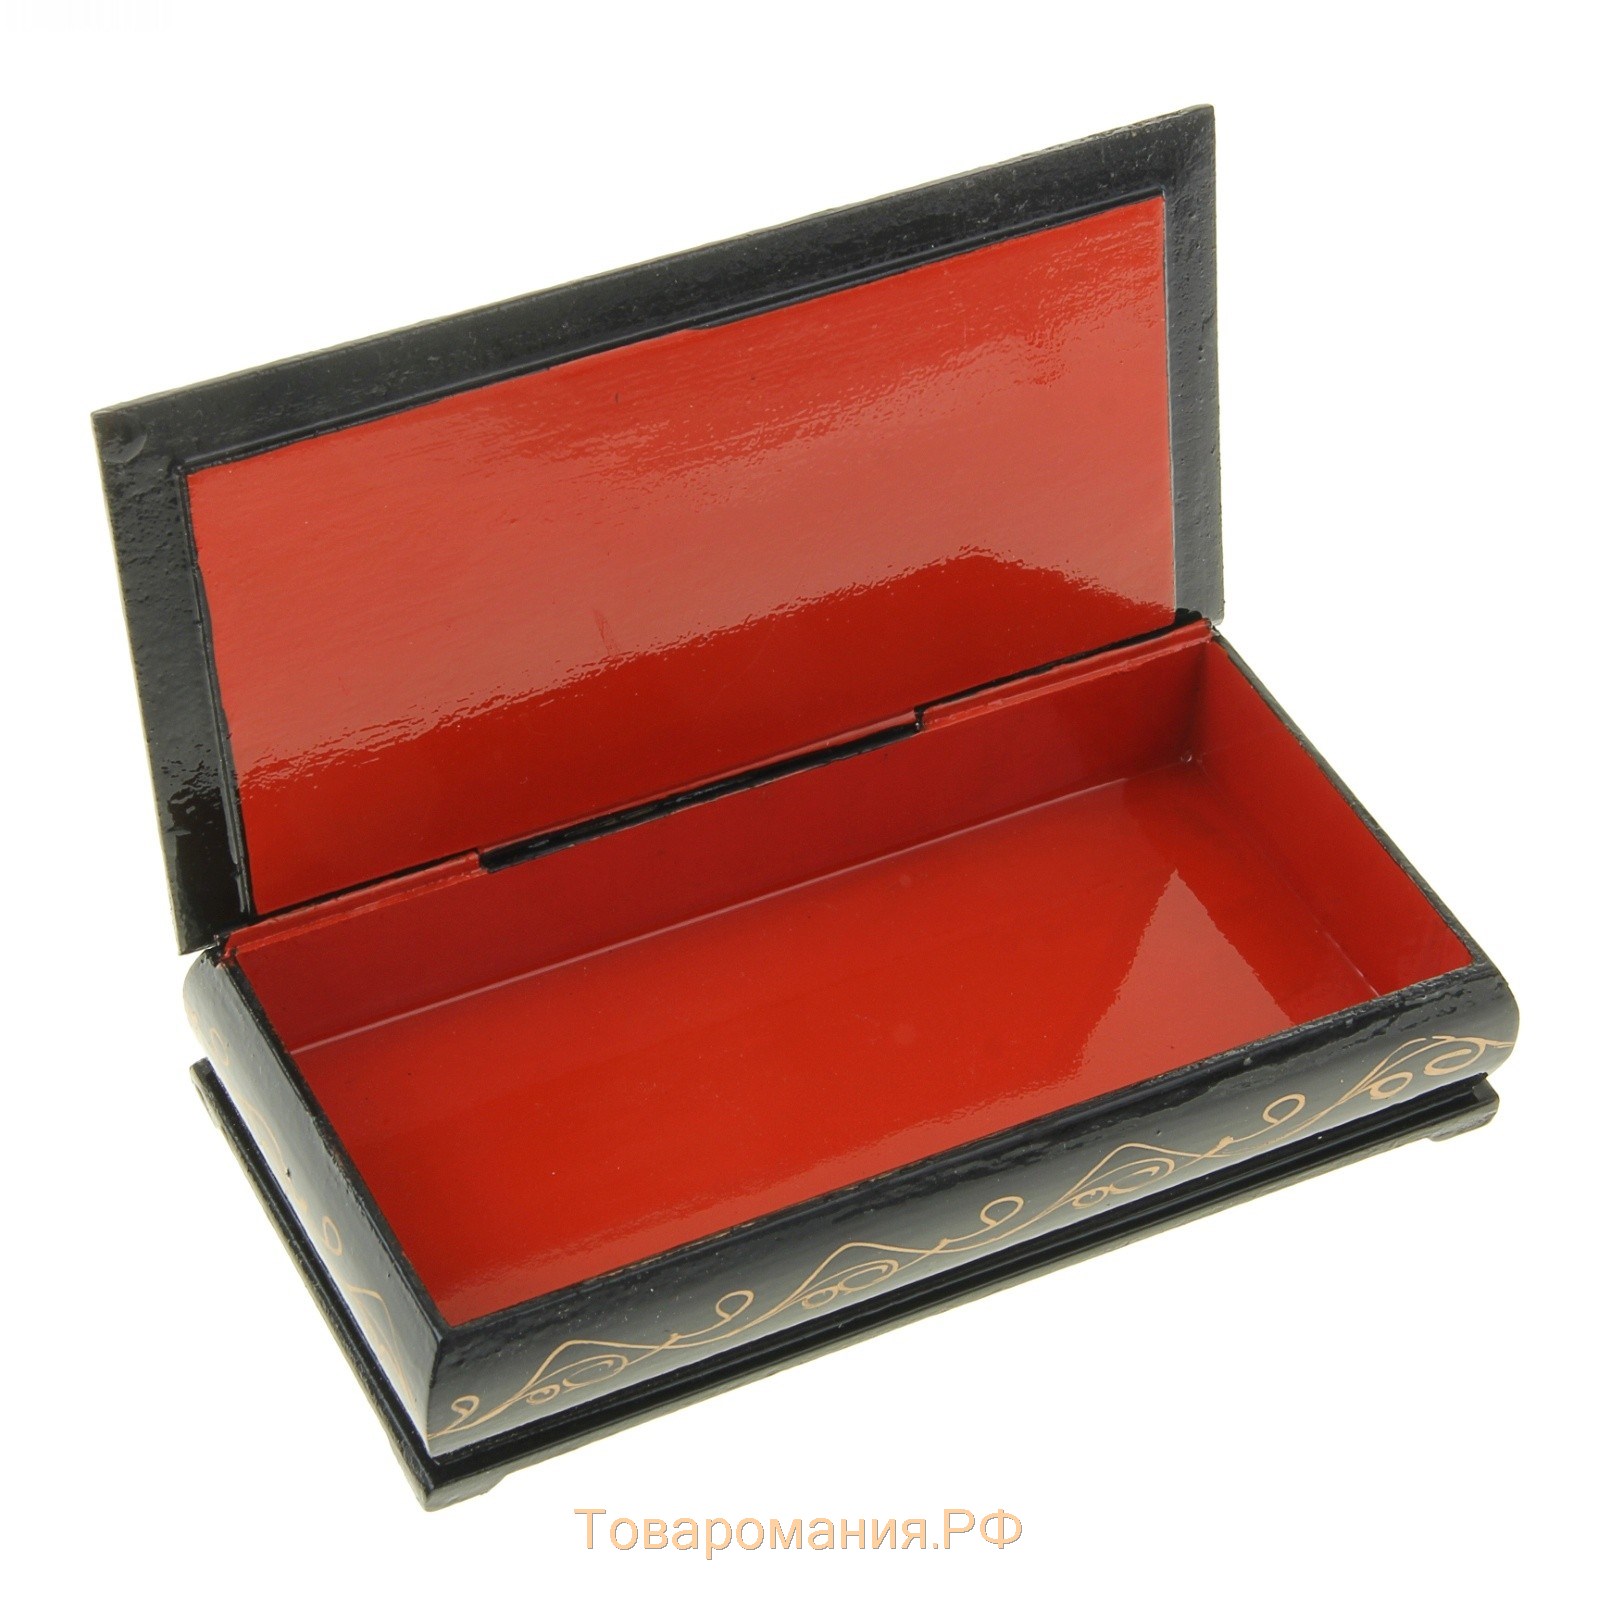 Шкатулка - купюрница «5000 рублей», 8,5×17 см, лаковая миниатюра